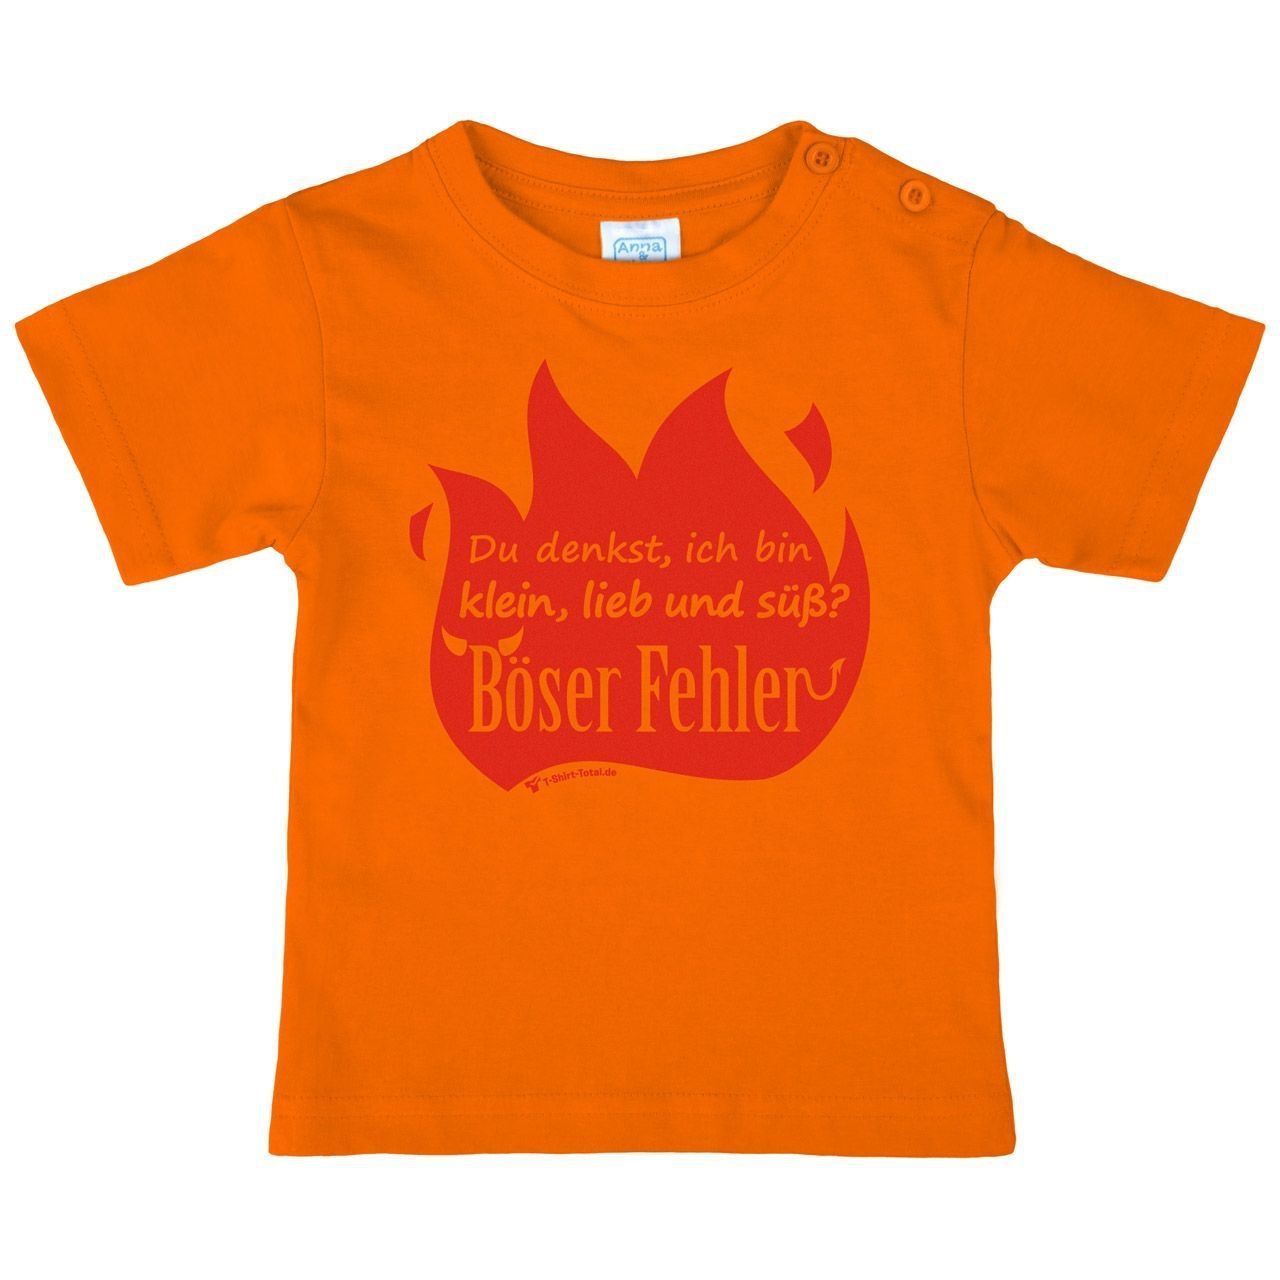 Böser Fehler Kinder T-Shirt orange 68 / 74